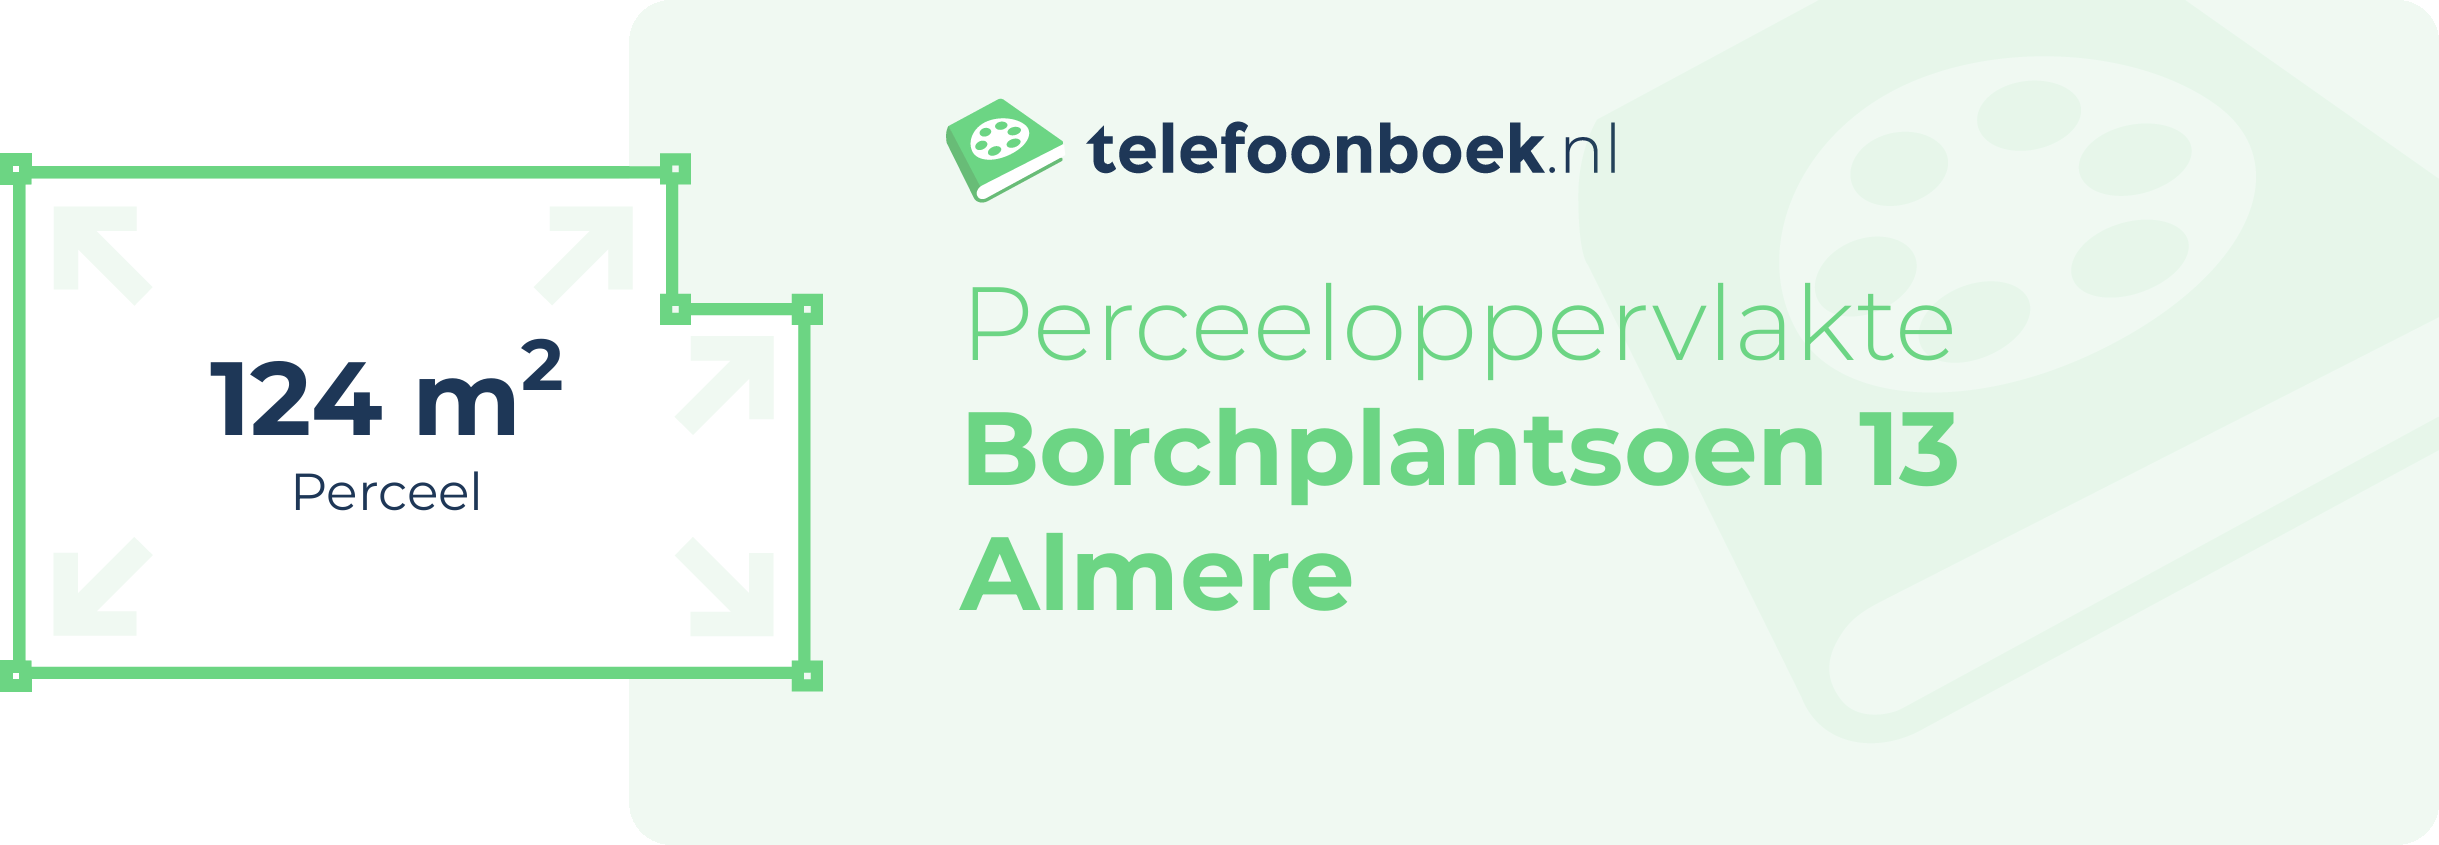 Perceeloppervlakte Borchplantsoen 13 Almere